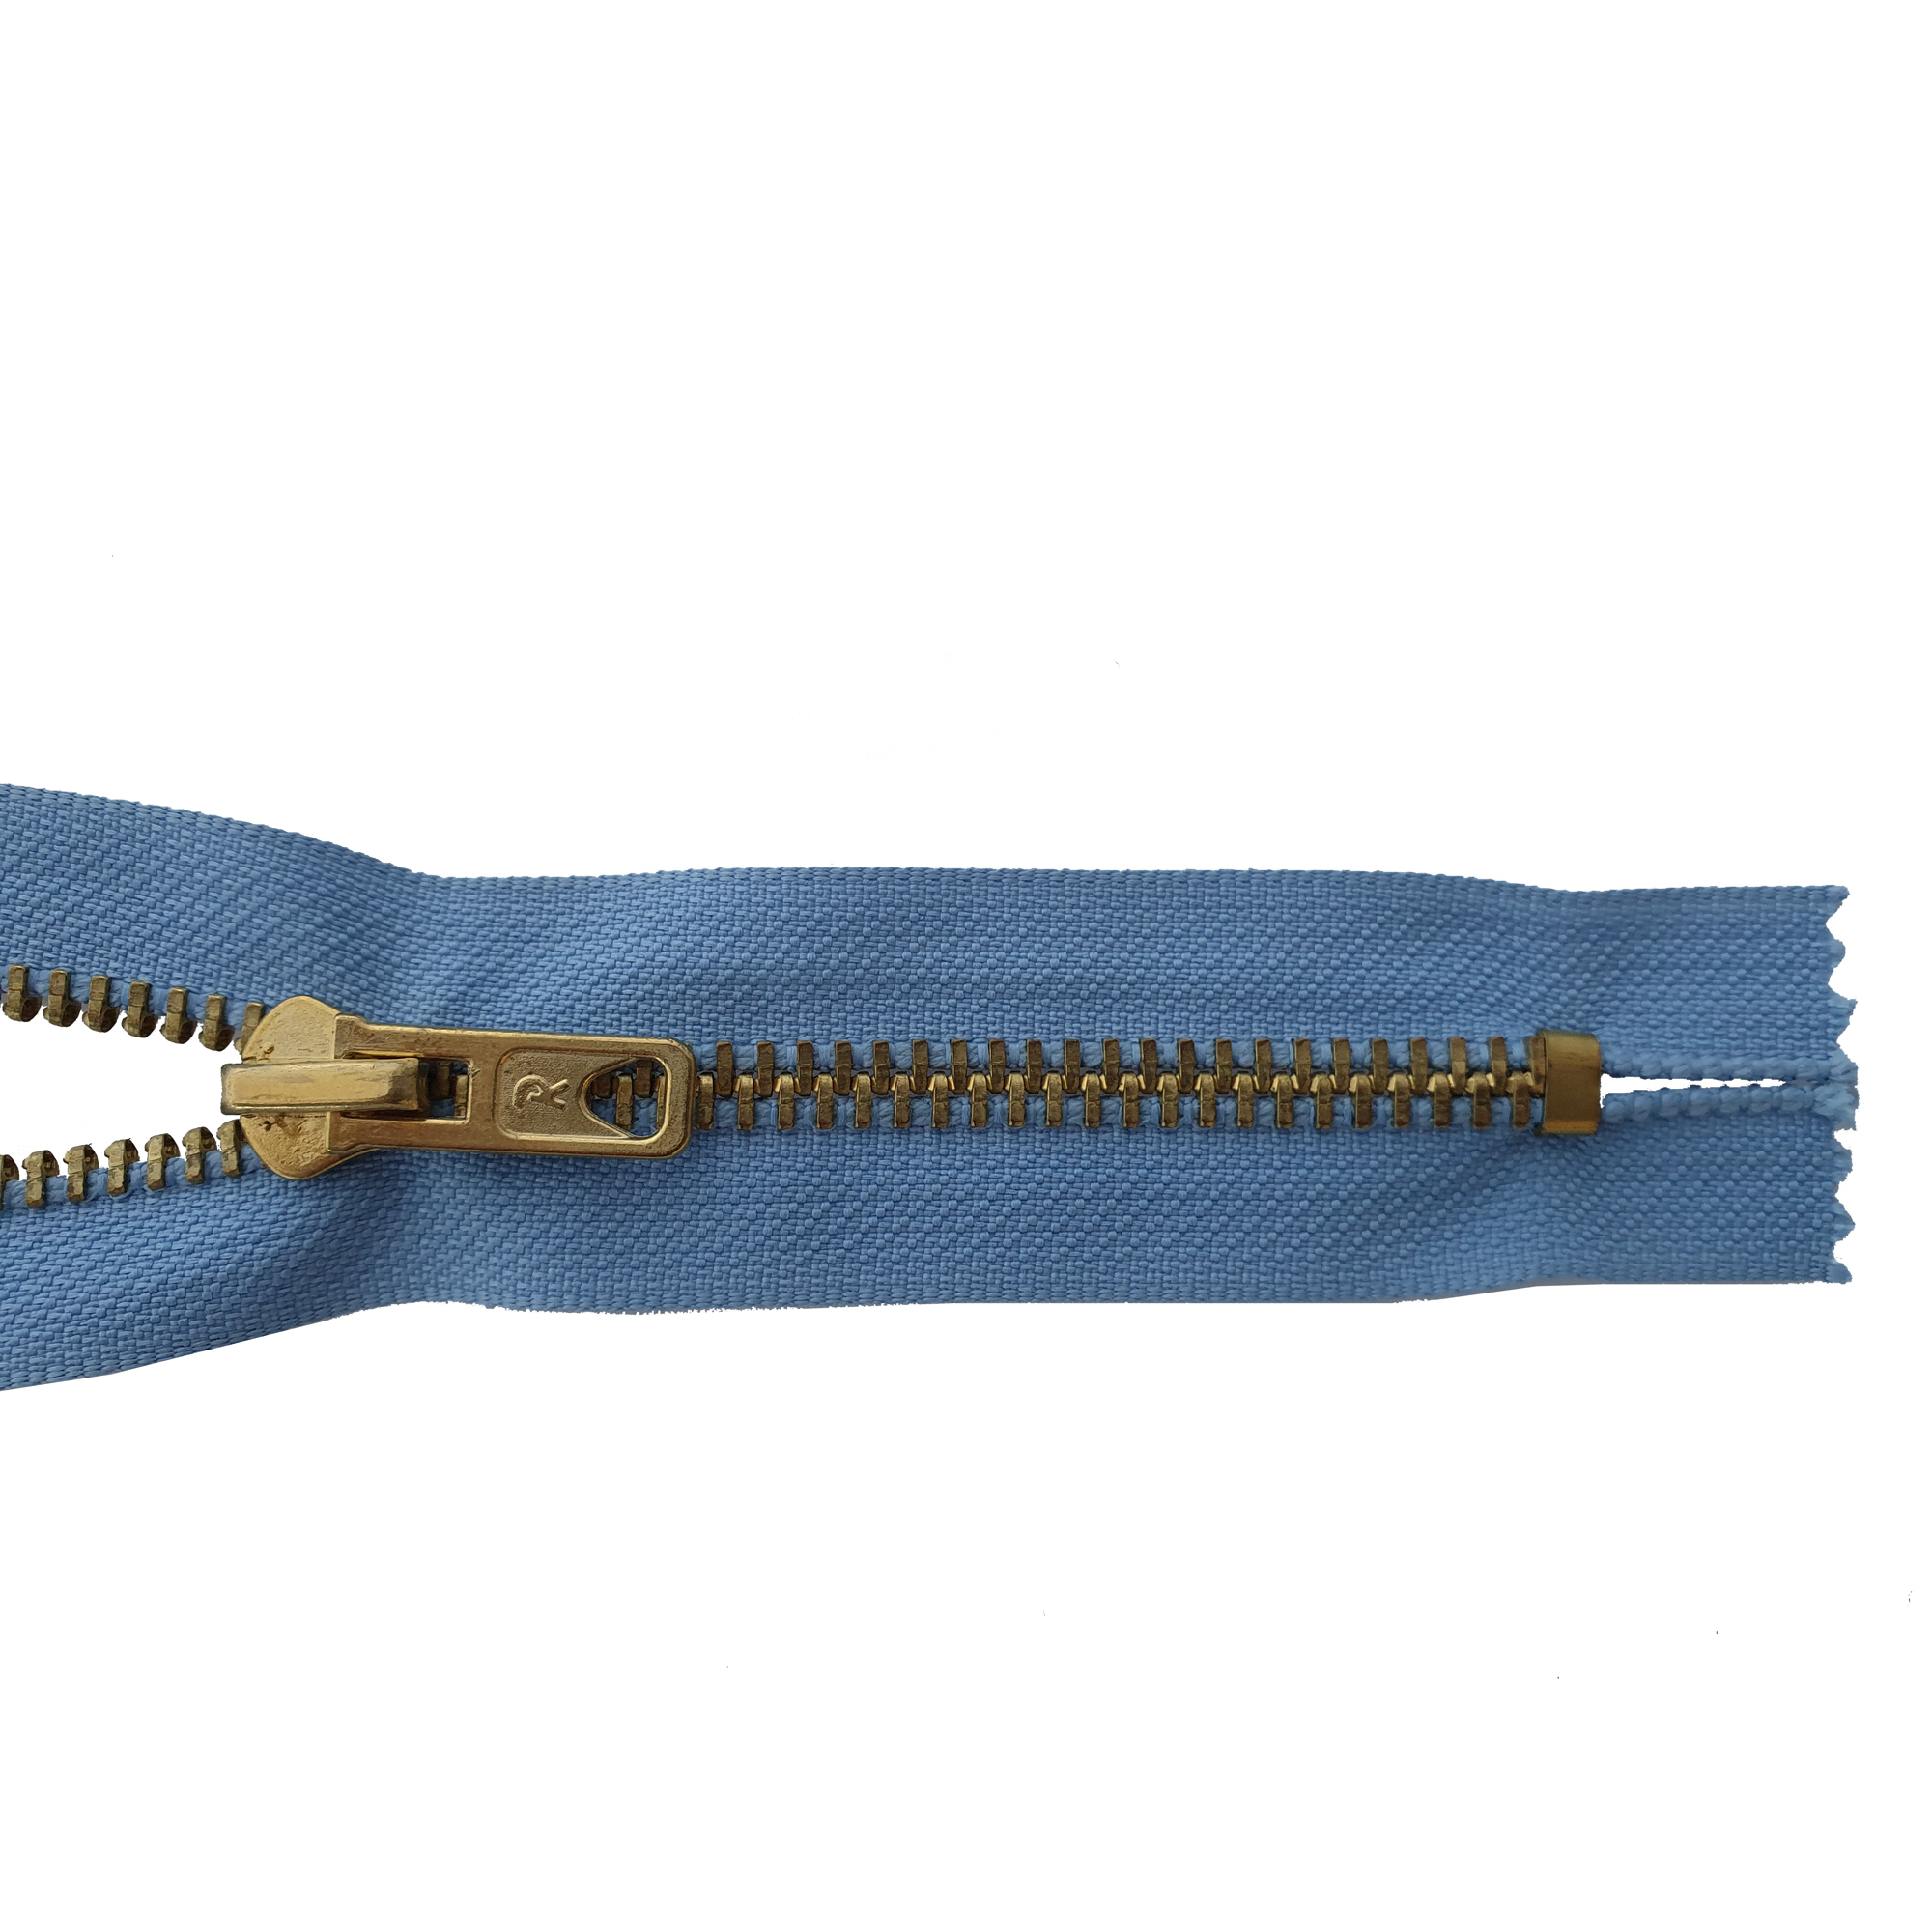 Reißverschluss 18cm, nicht teilbar, Metall goldf. breit, graublau, hochwertiger Marken-Reißverschluss von Rubi/Barcelona